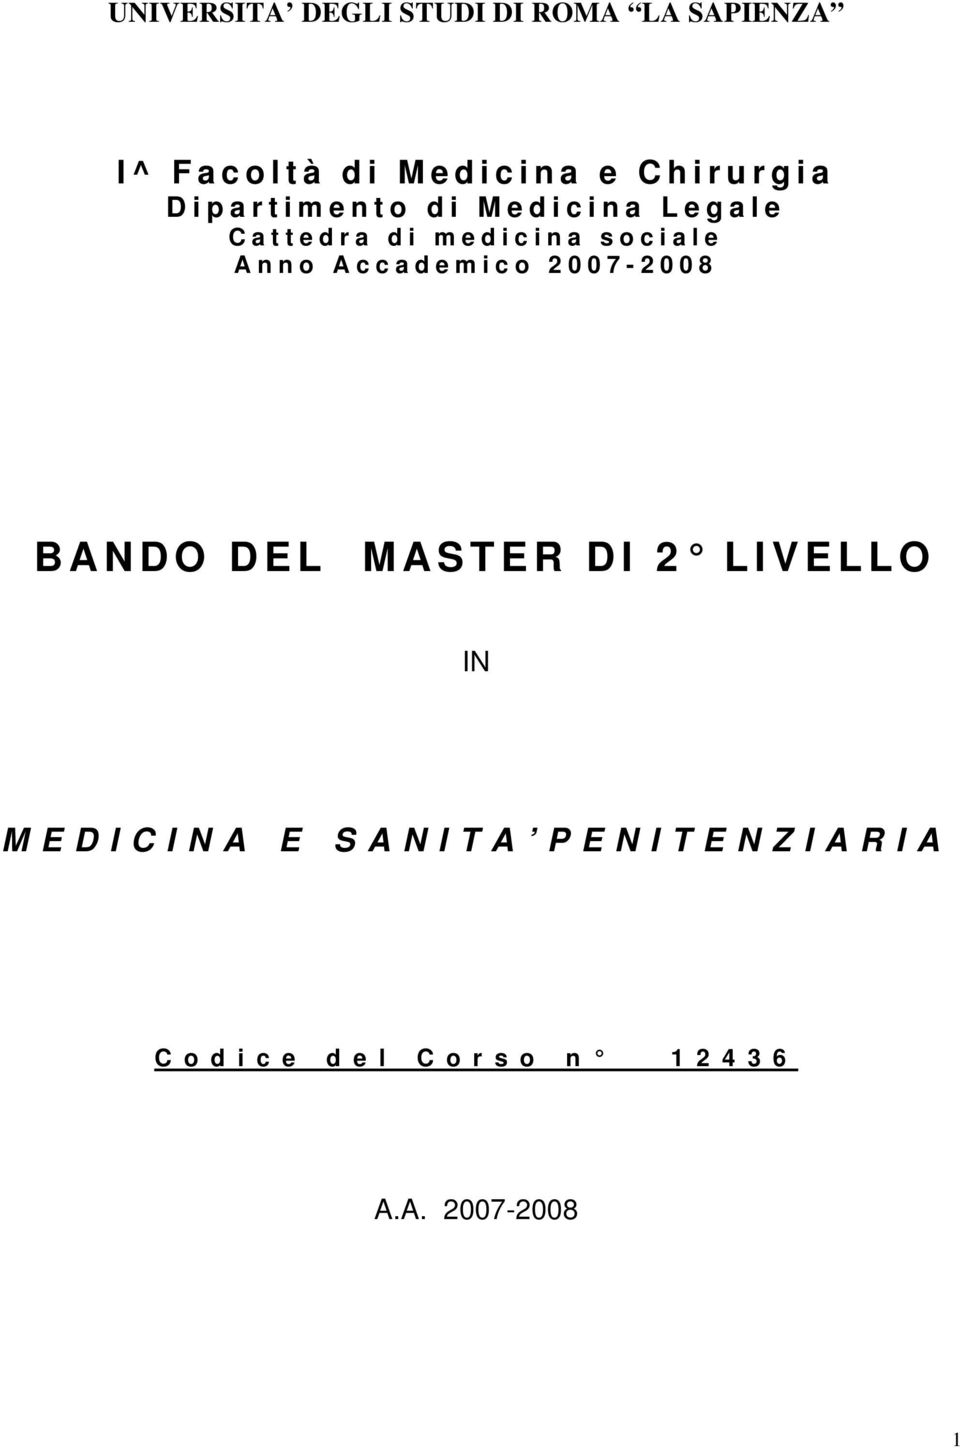 Accademico 2007-2008 BANDO DEL MASTER DI 2 LIVELLO IN